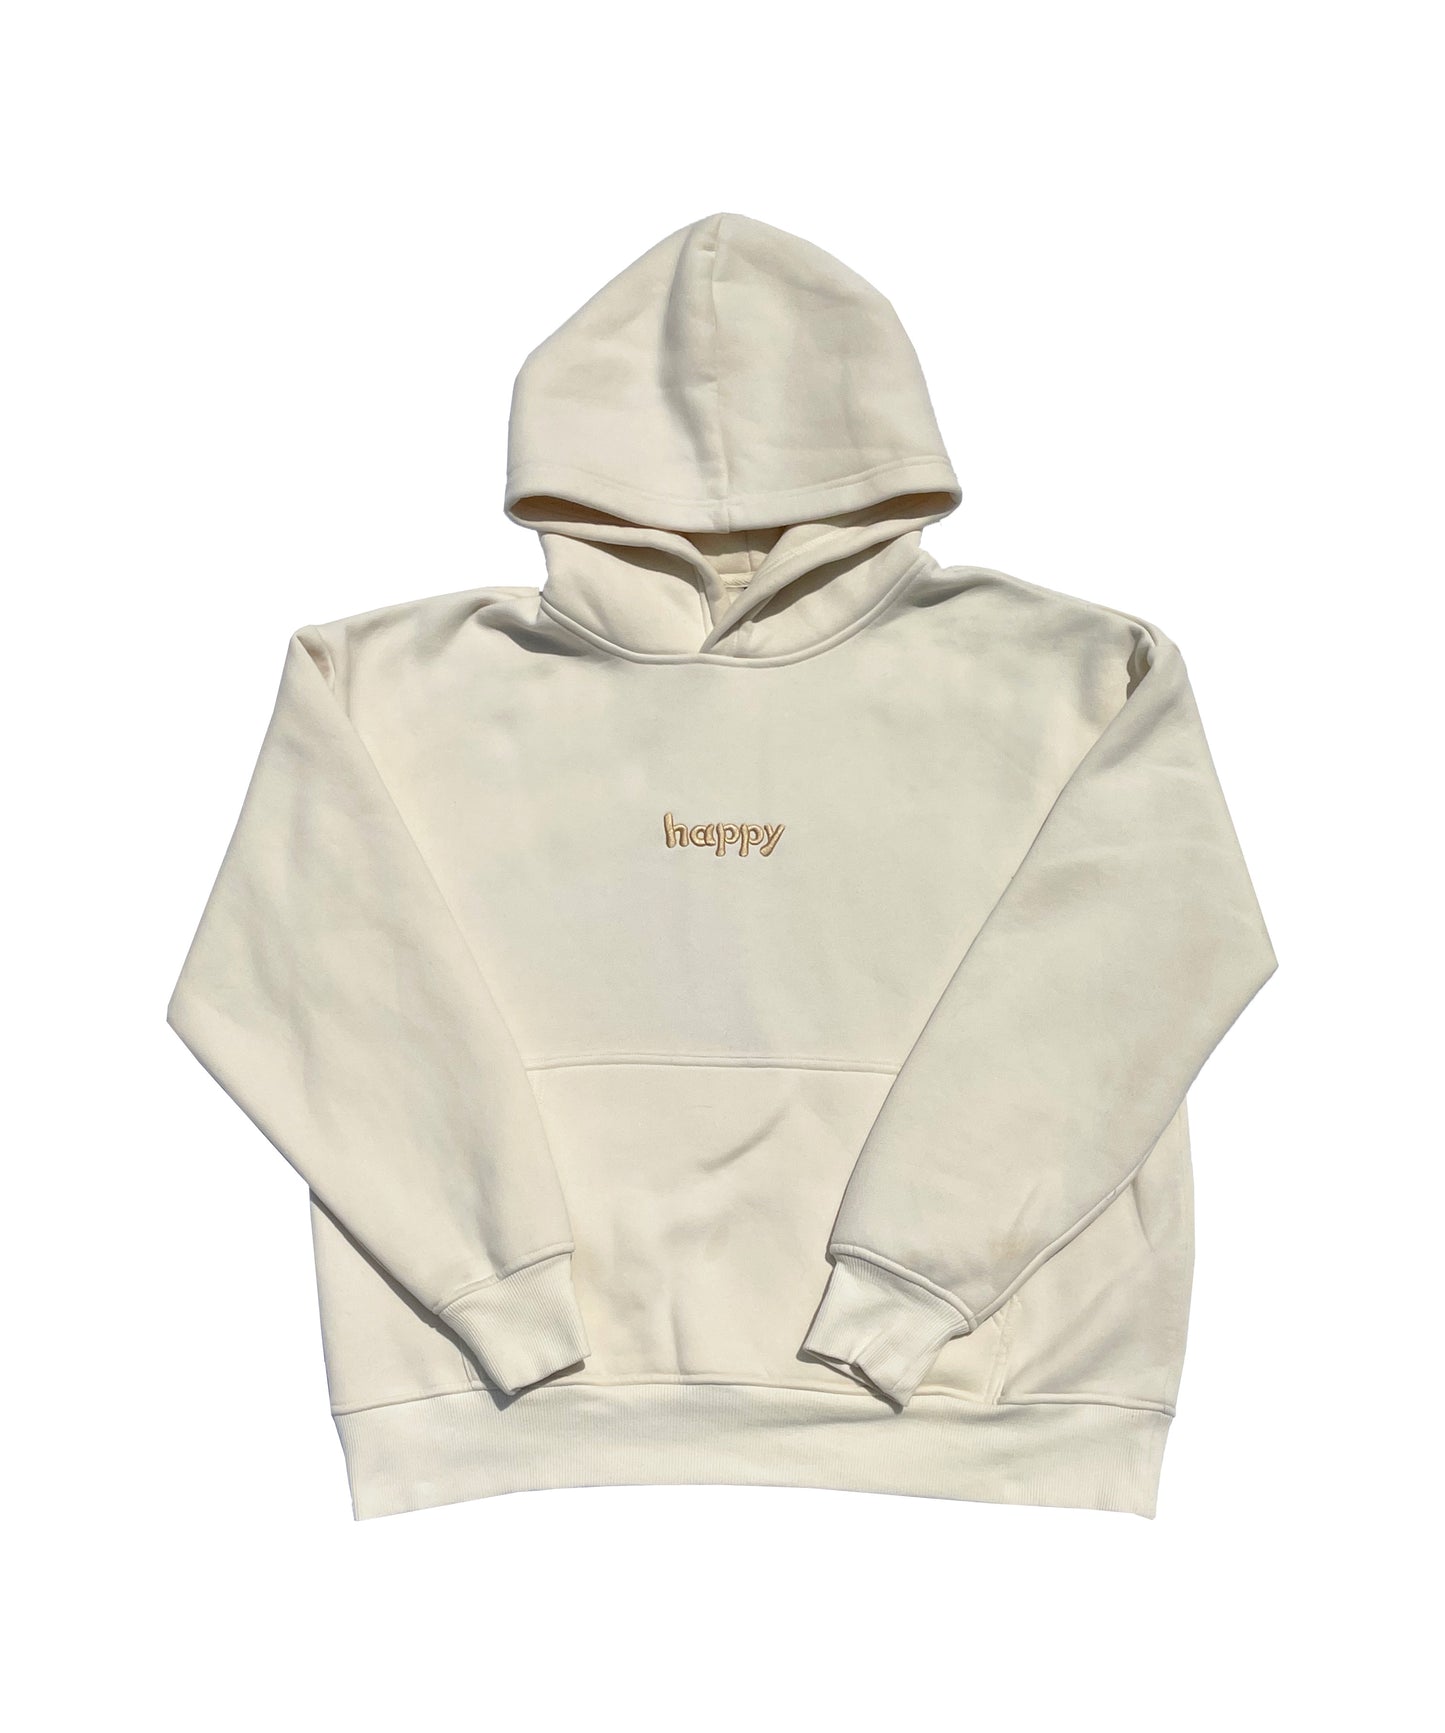 "happy" hoodie